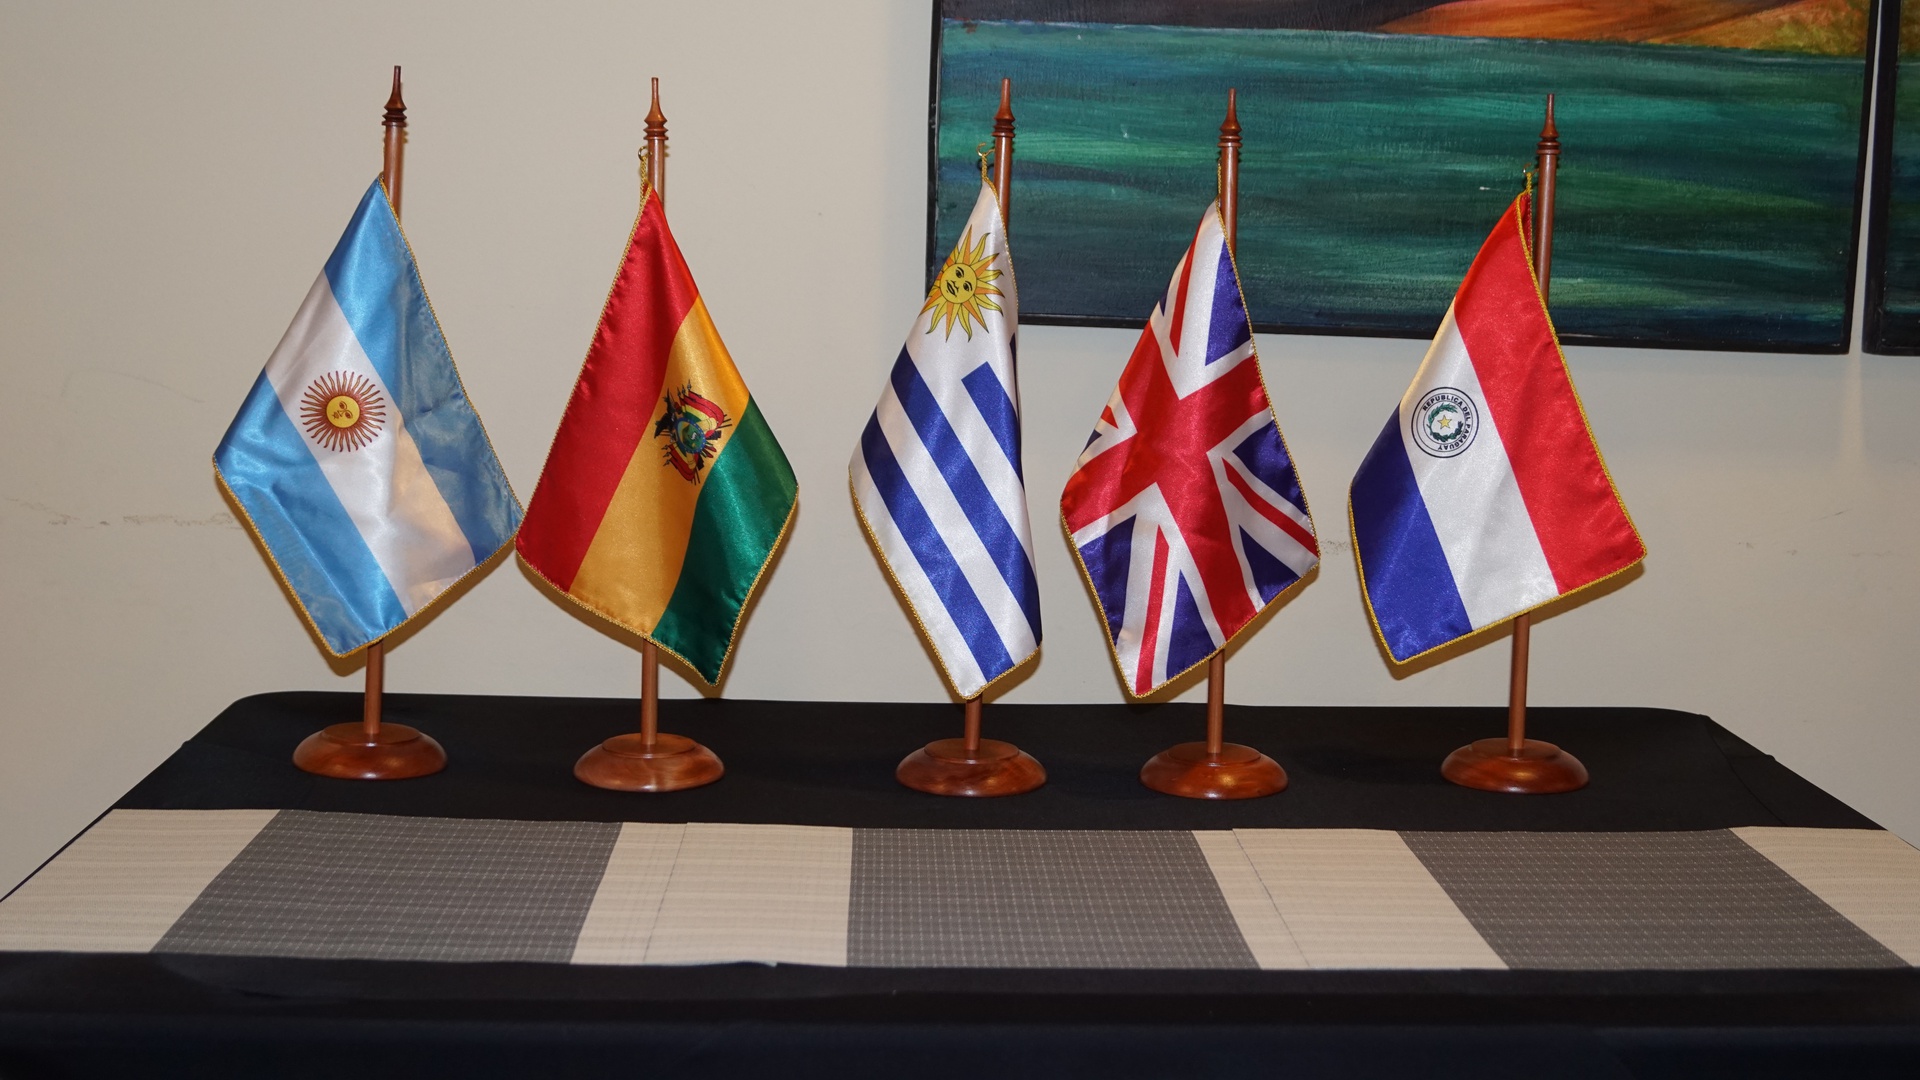 Logias latinoamericanas afianzan relaciones en Aniversario de Gran Logia de Chile